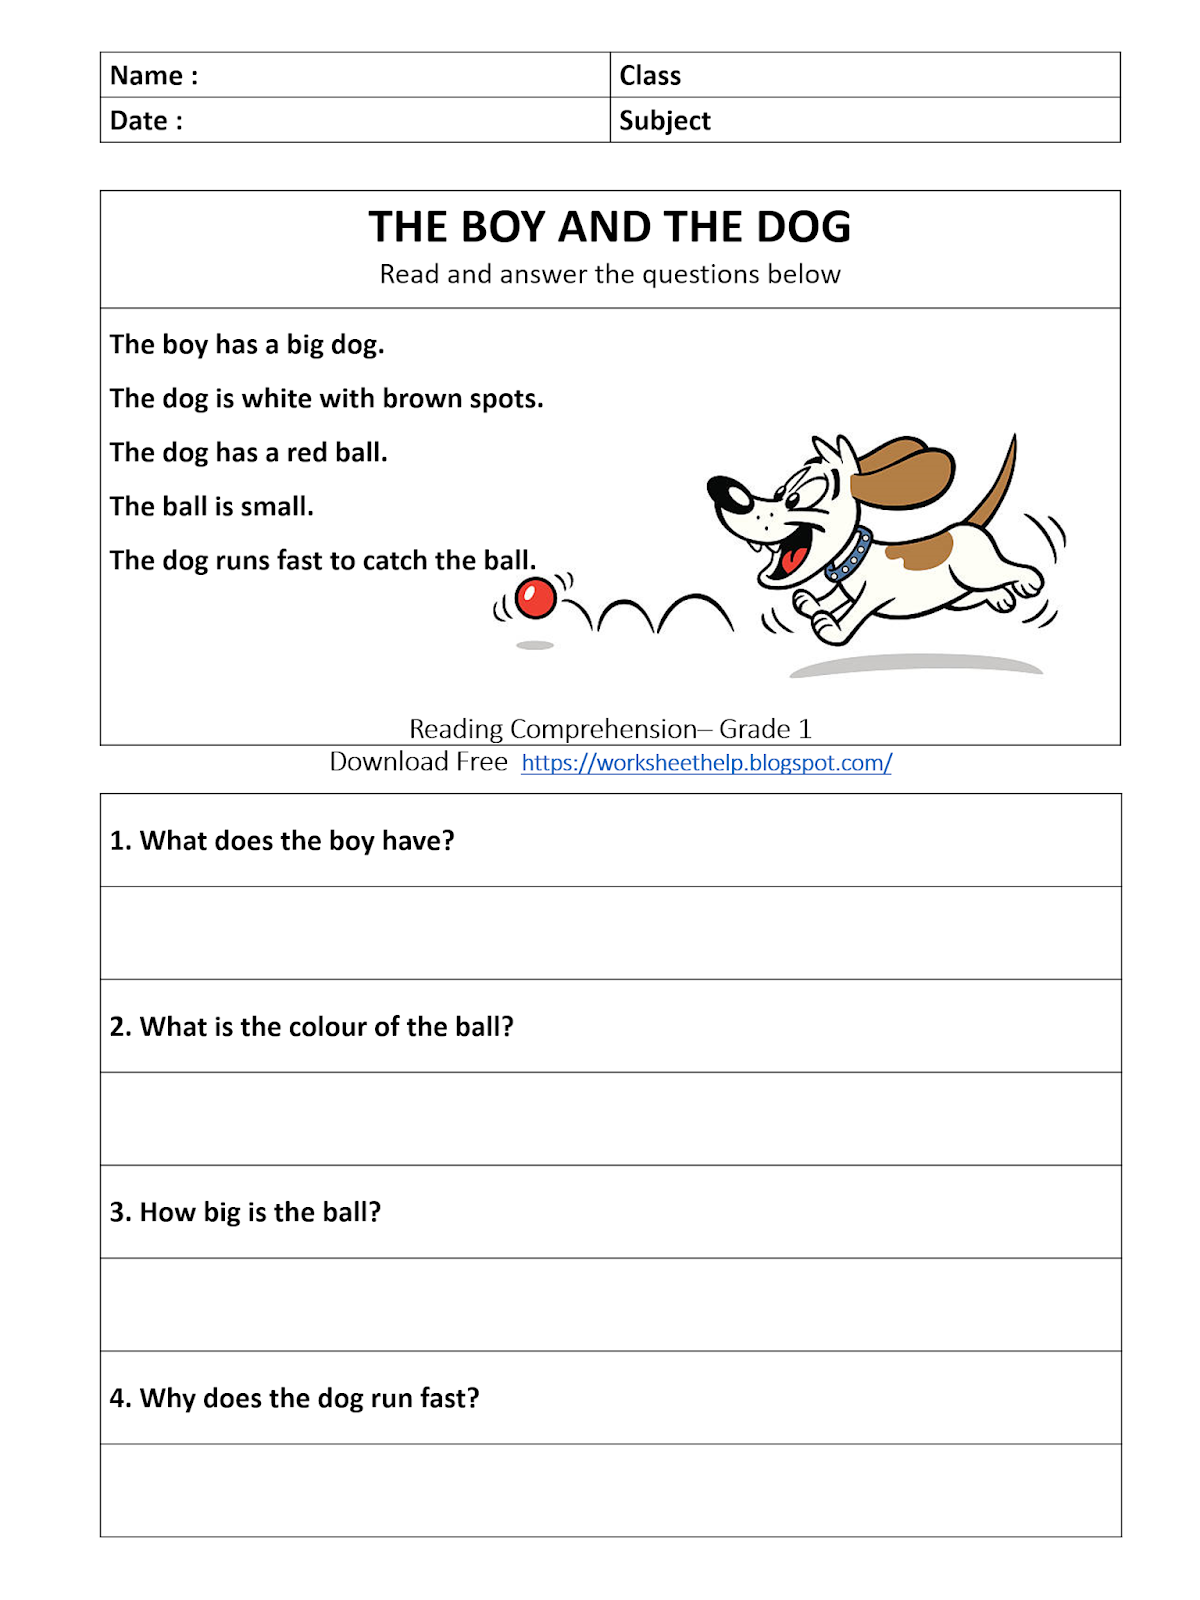 reading-comprehension-worksheet-grade-1-boy-and-dog